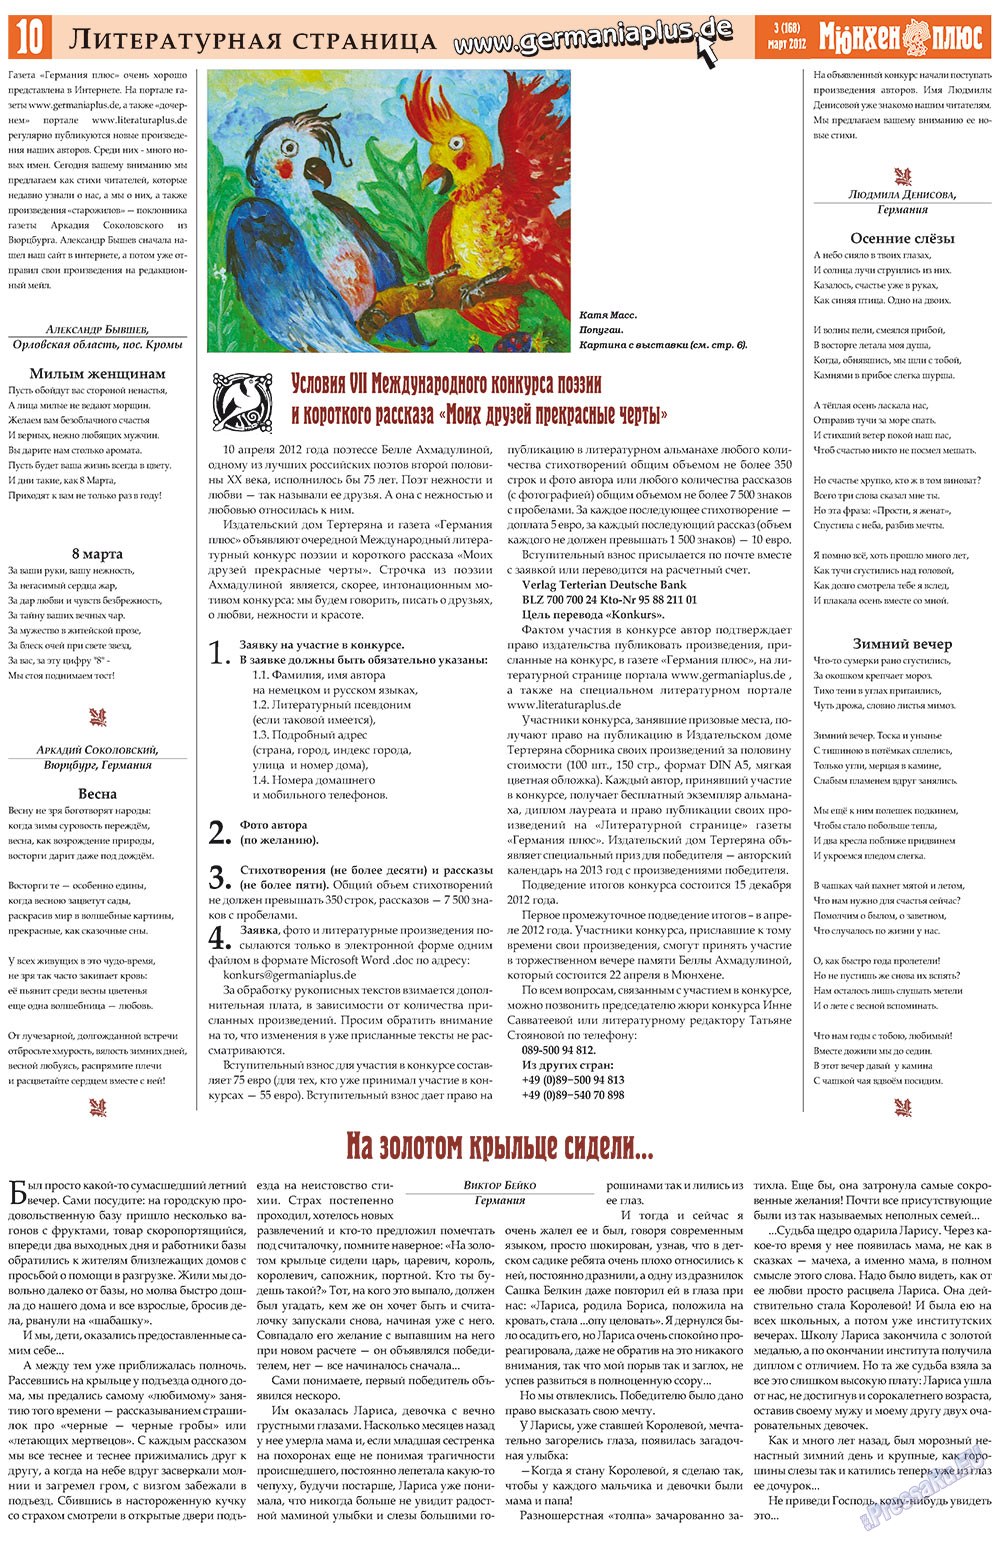 Германия плюс, газета. 2012 №3 стр.10